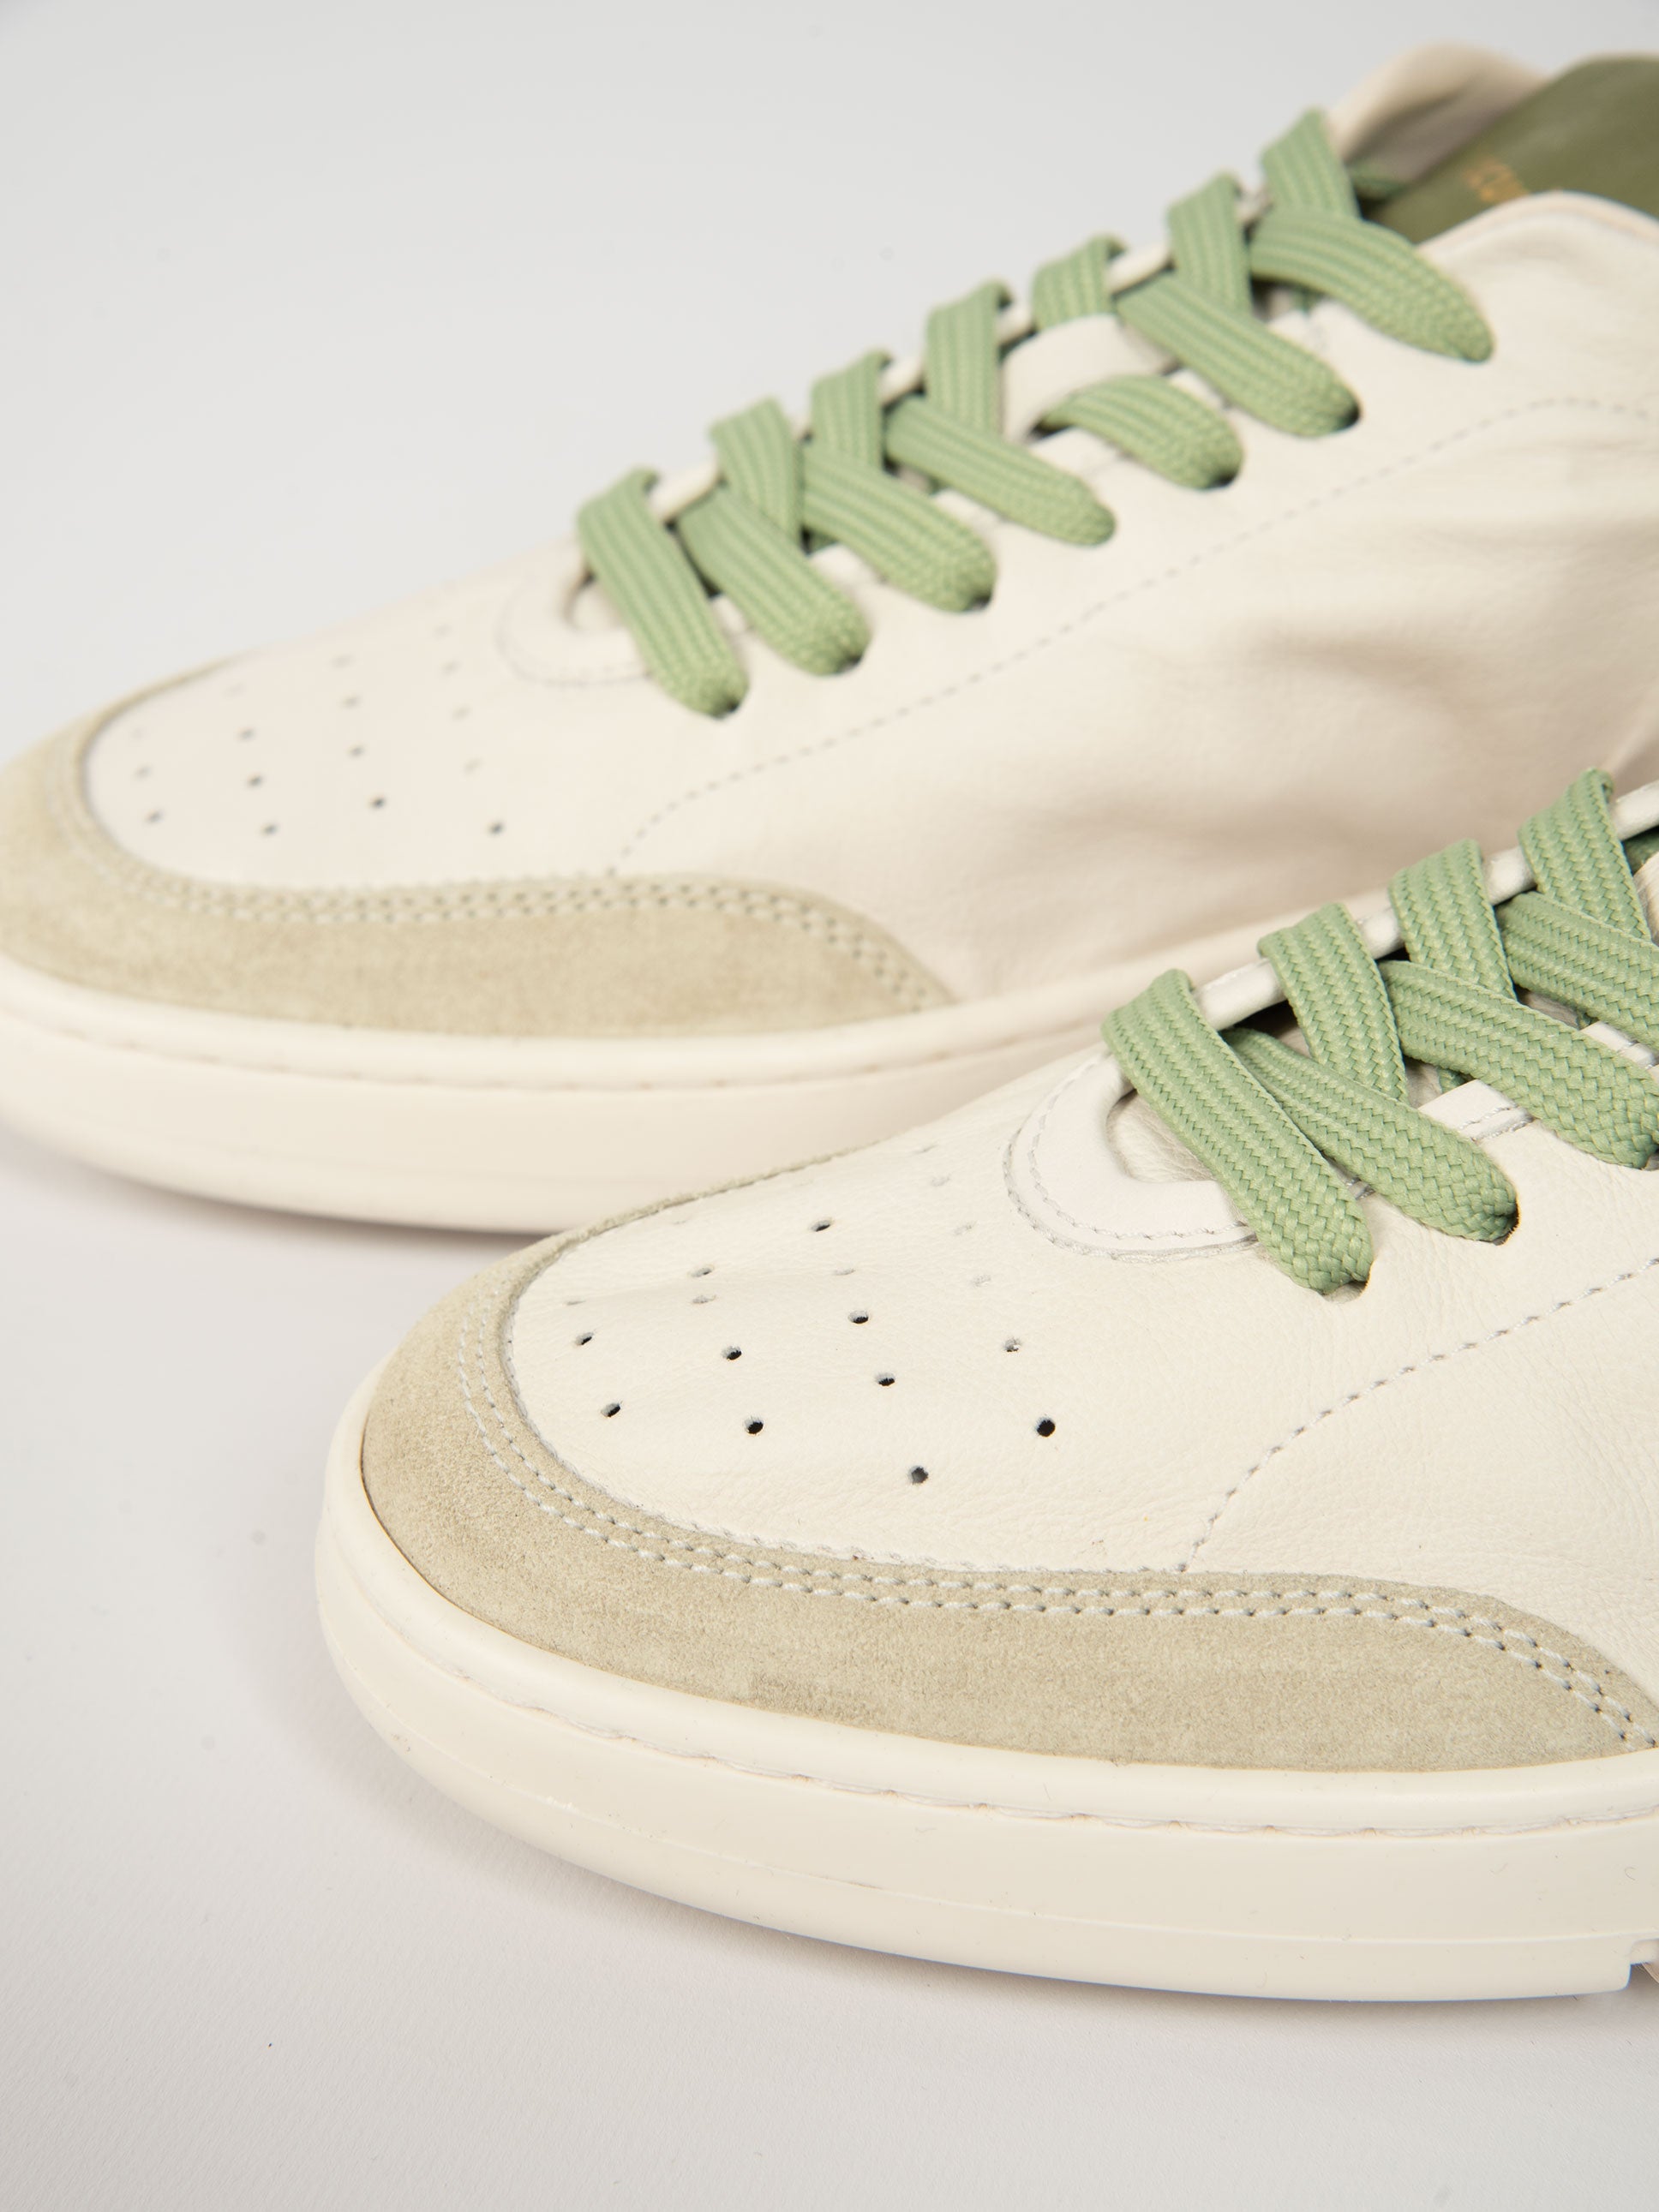 Sneakers Guga Pelle - Bianco/Verde